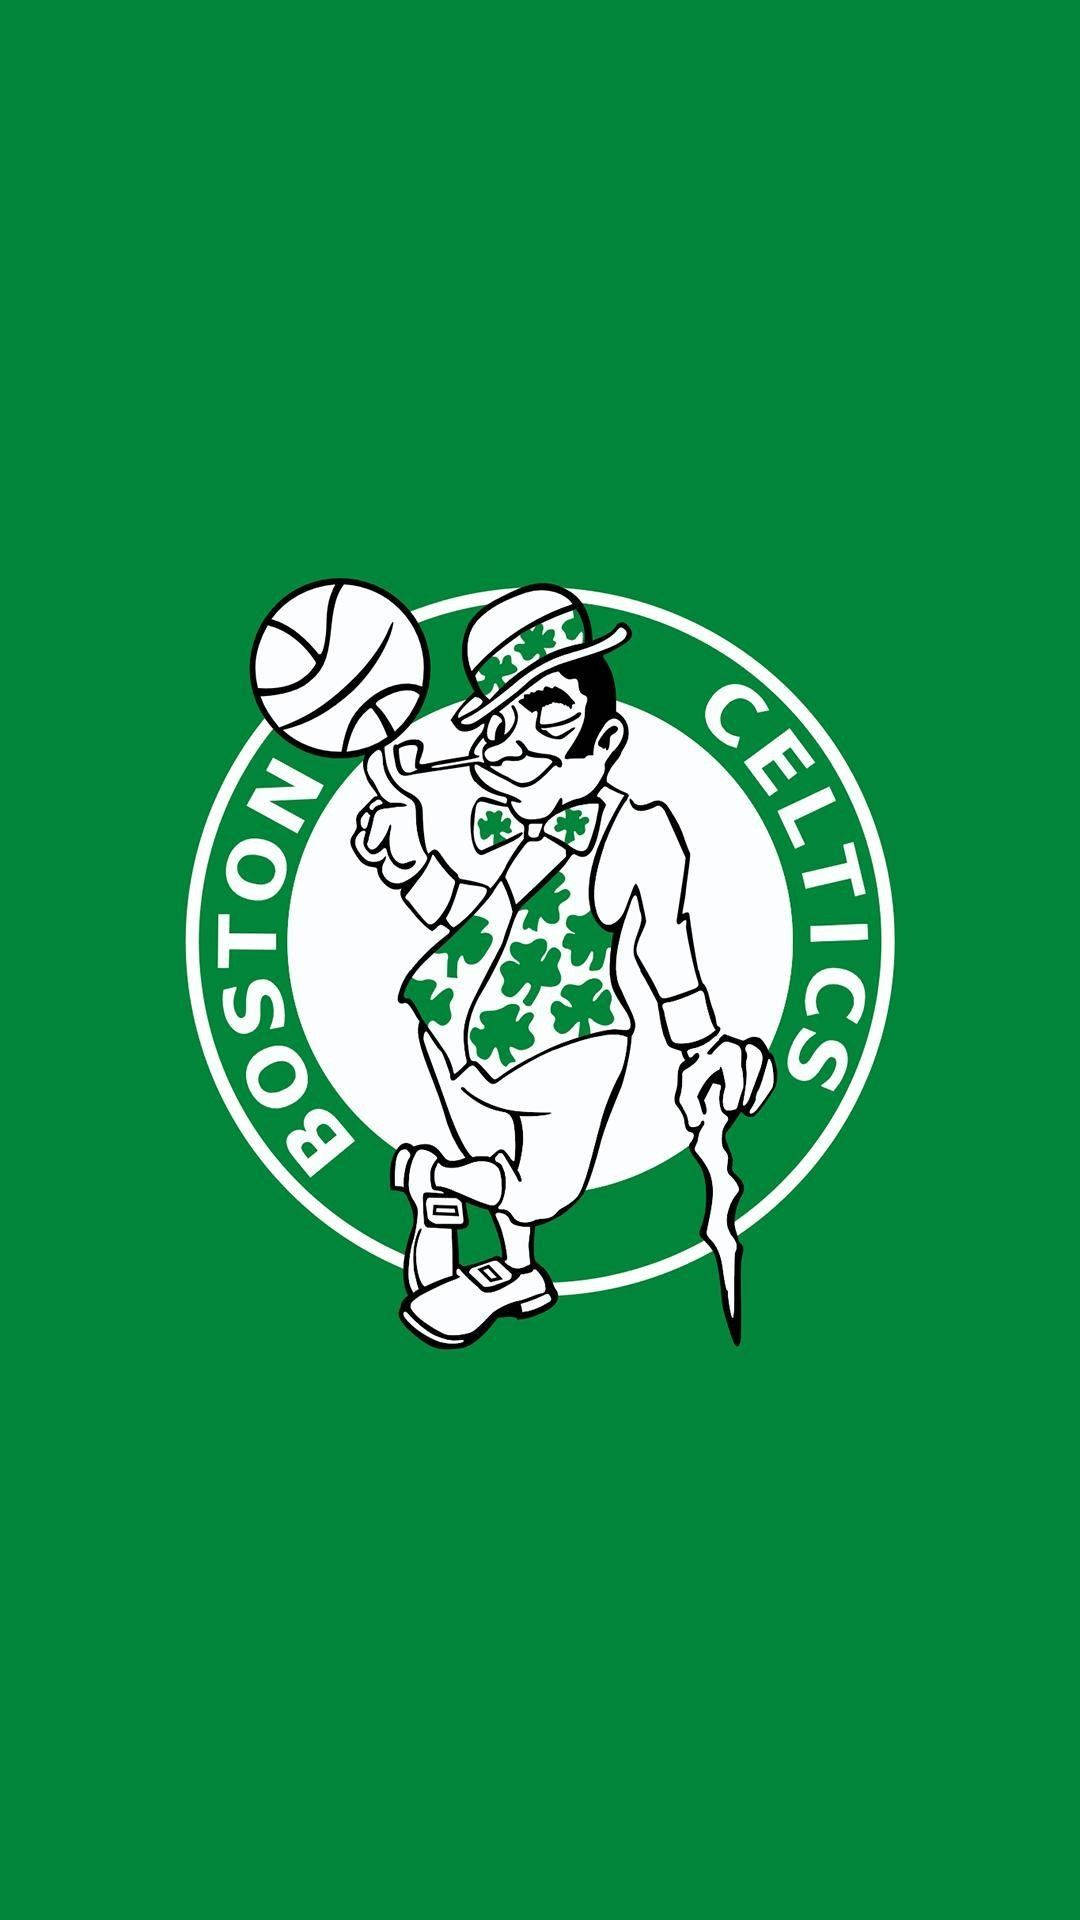 Boston Celtics  Boston celtics wallpaper, Boston celtics, Boston wallpaper